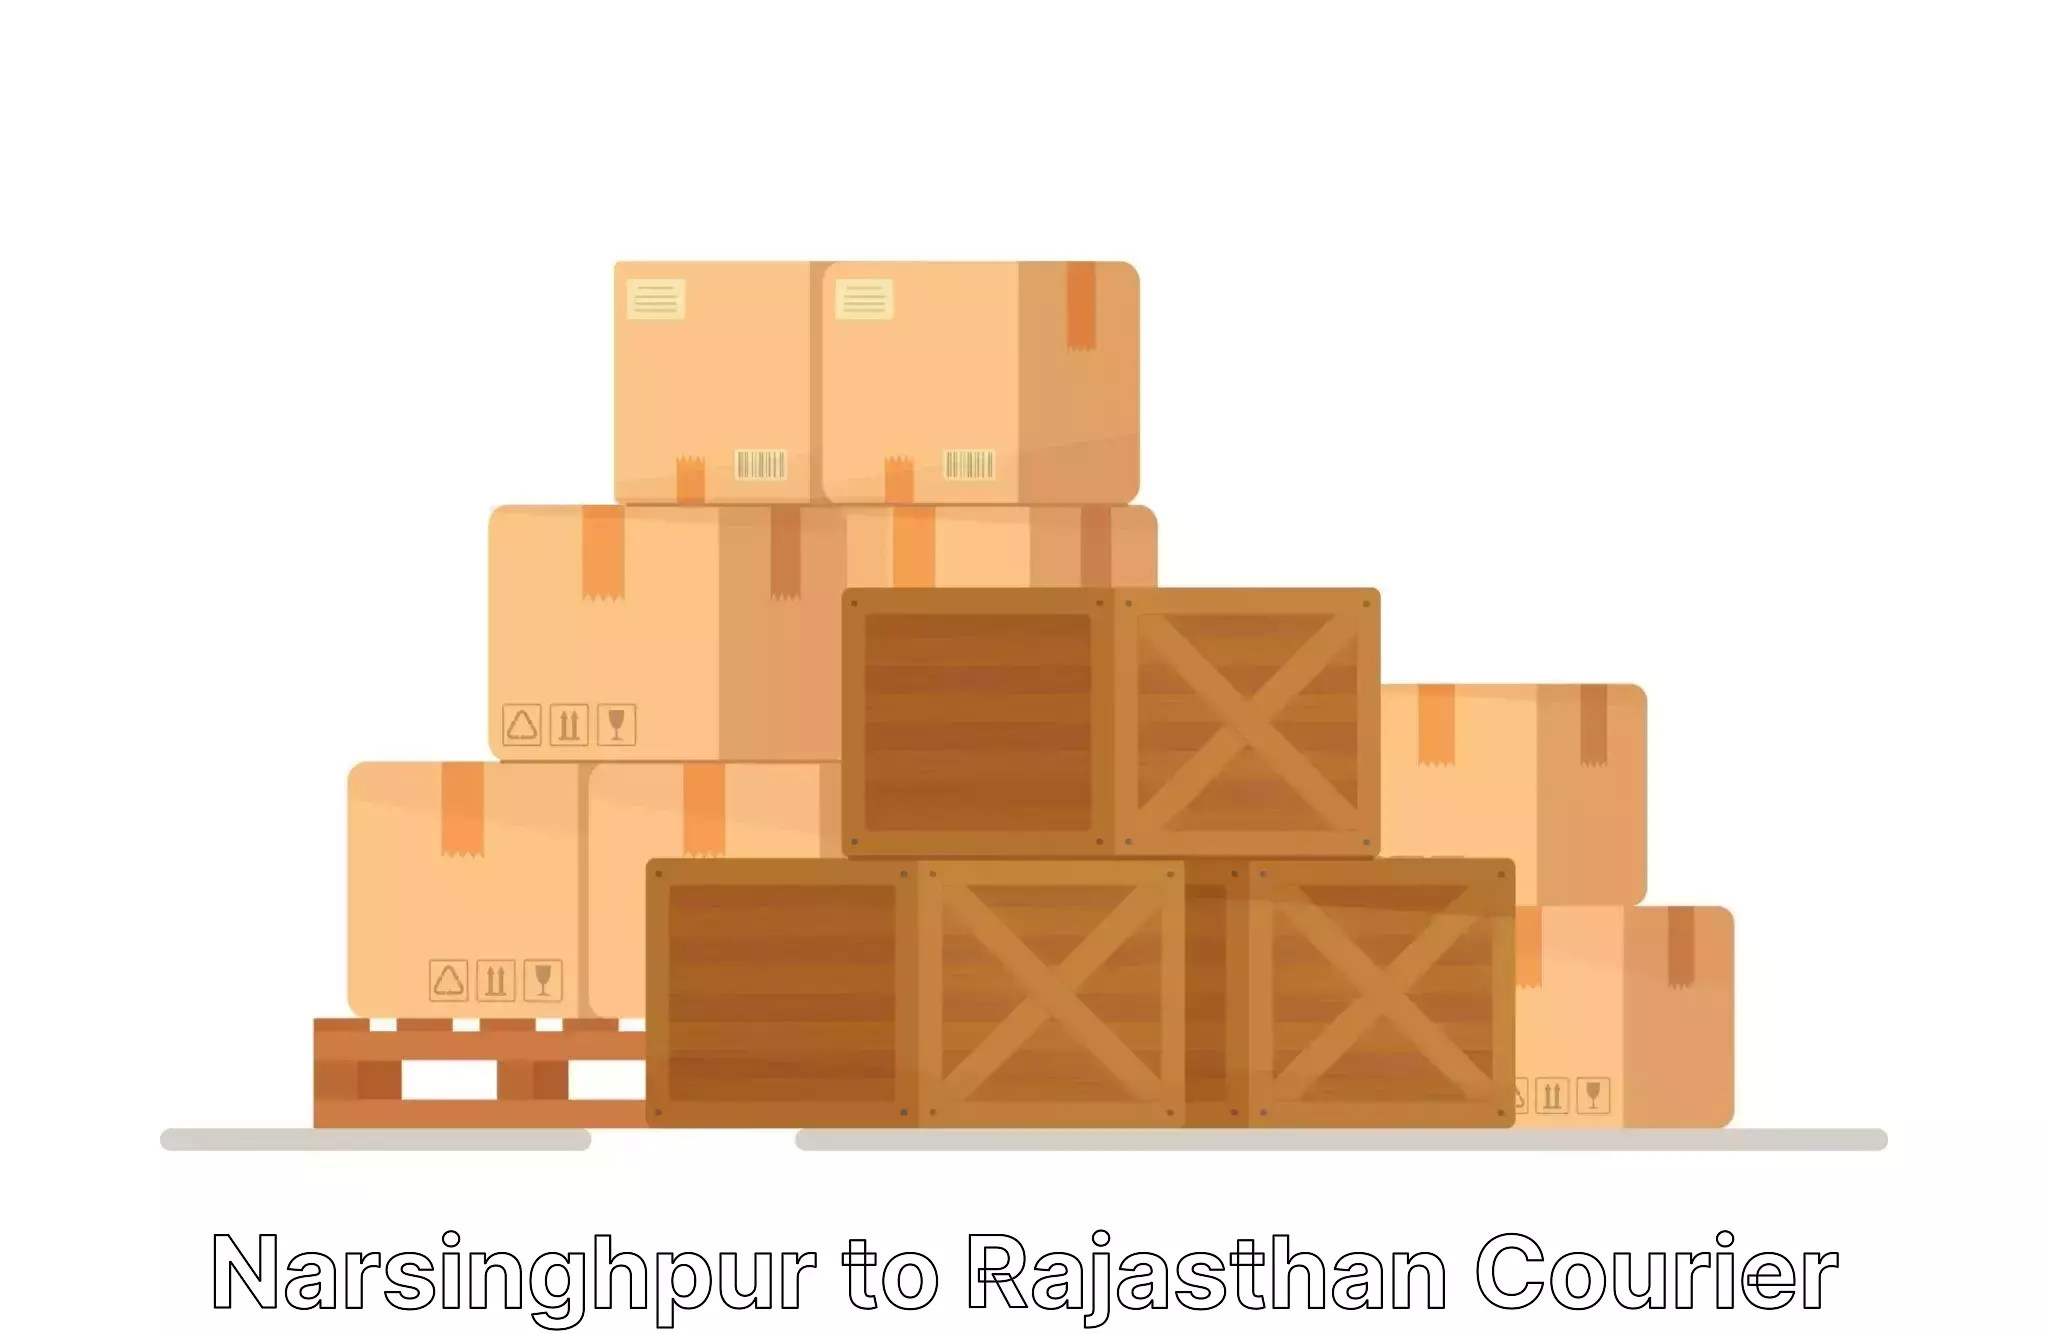 Furniture relocation experts Narsinghpur to Yathalakunta